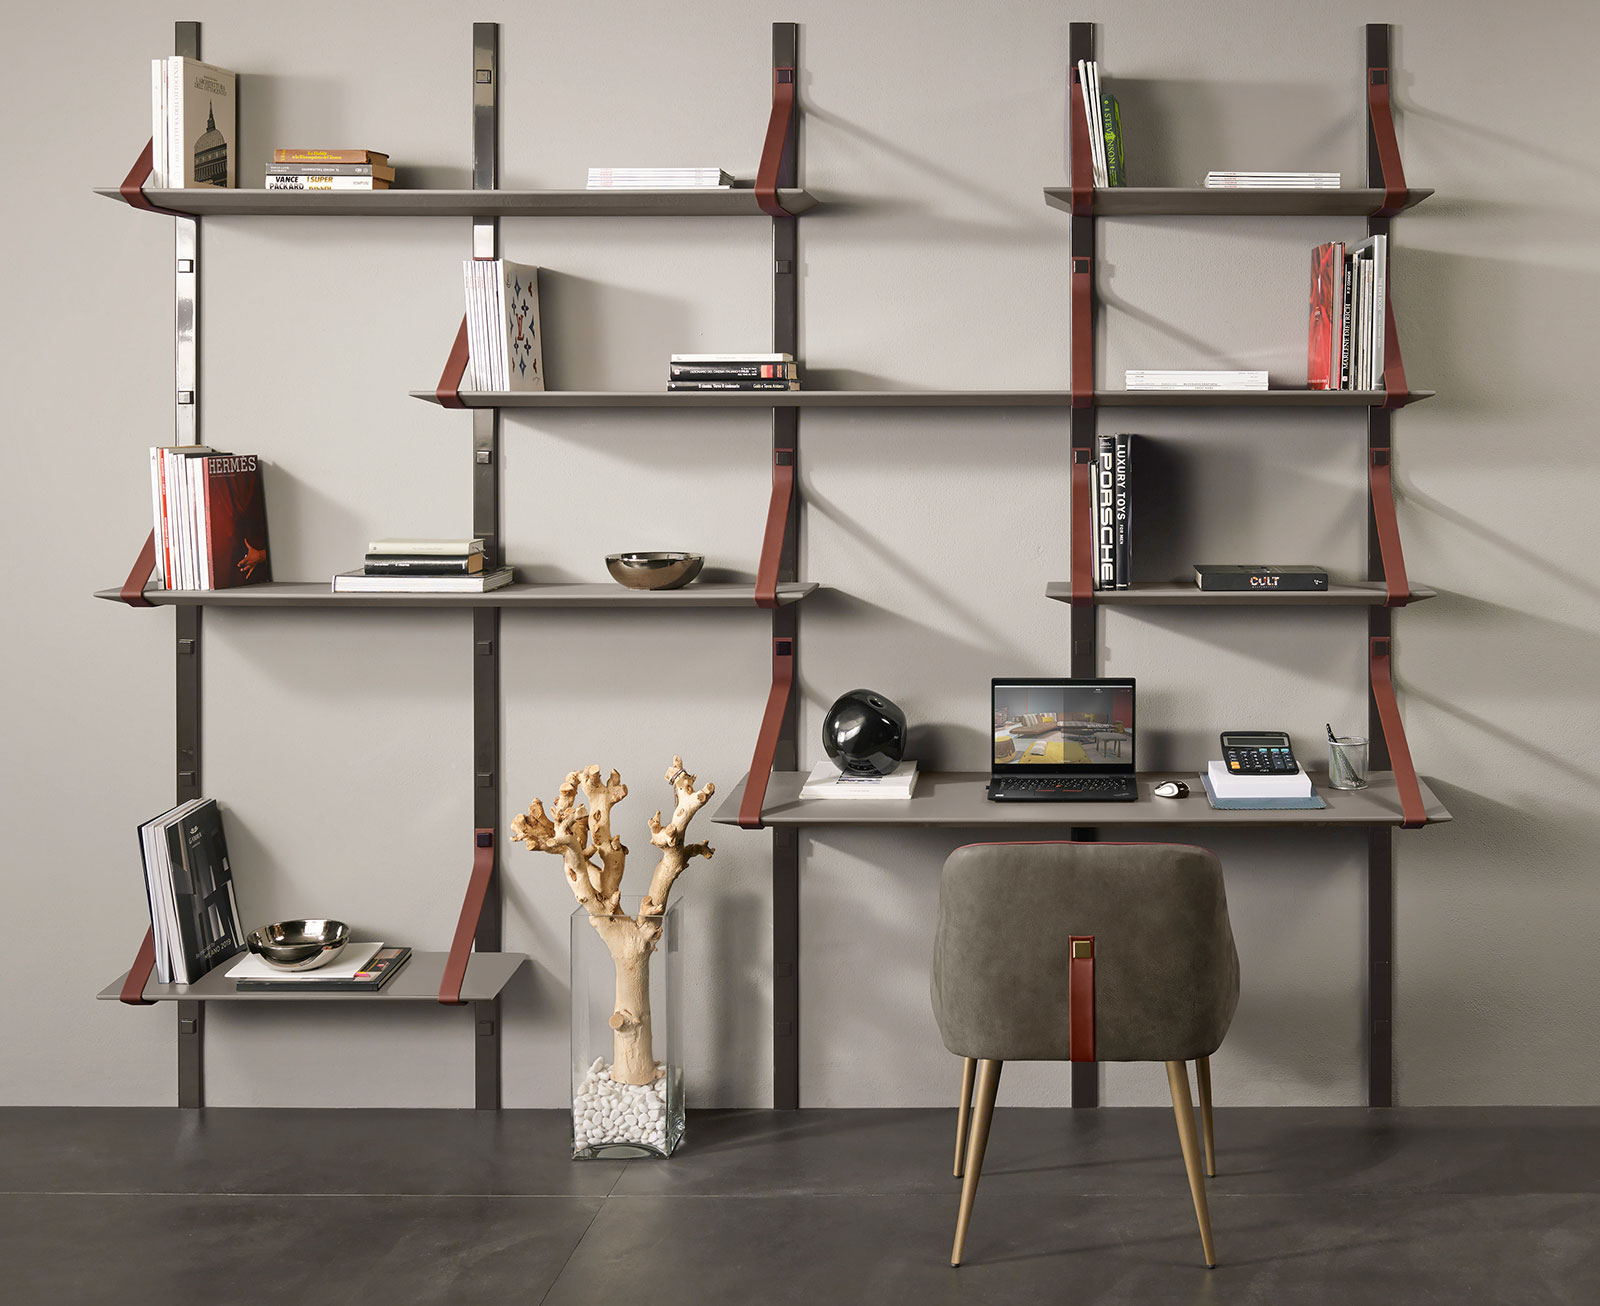 Bibliothèque murale en cuir et ciment made in italy. Vente en ligne de meubles design haut de gamme avec livraison gratuite.